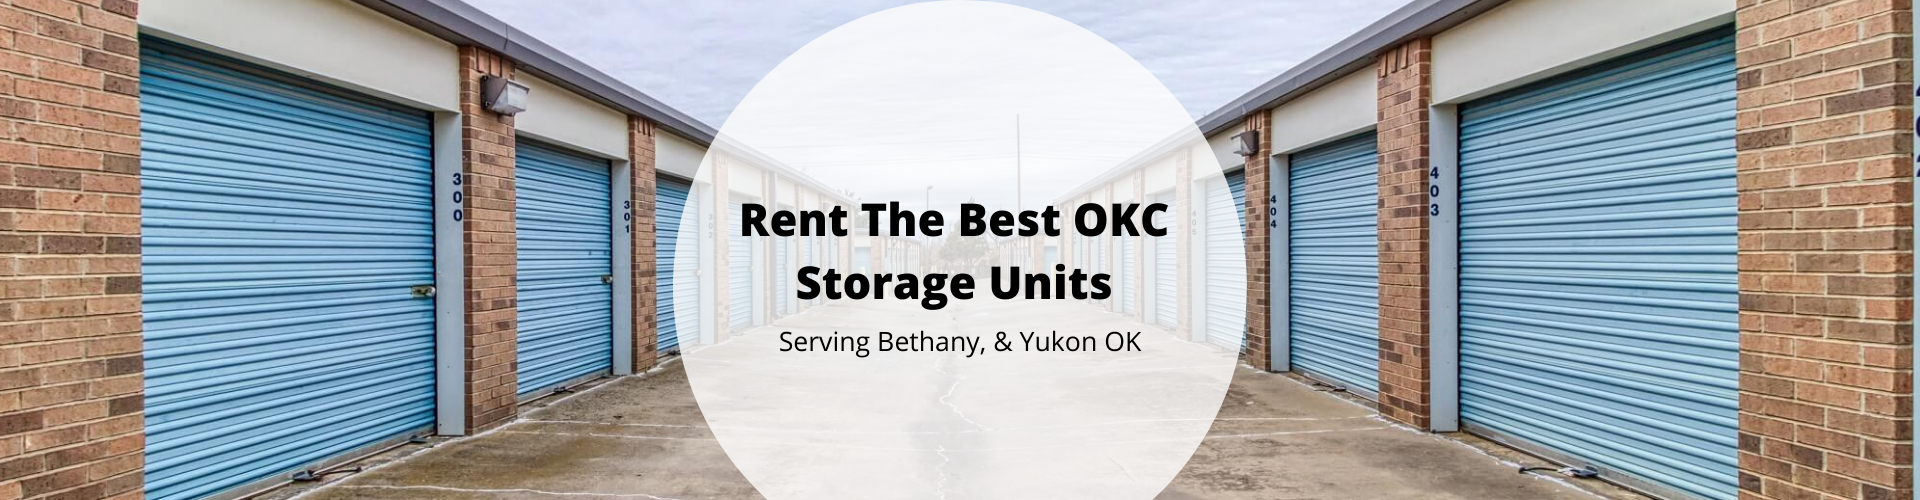 OKC Storage Units